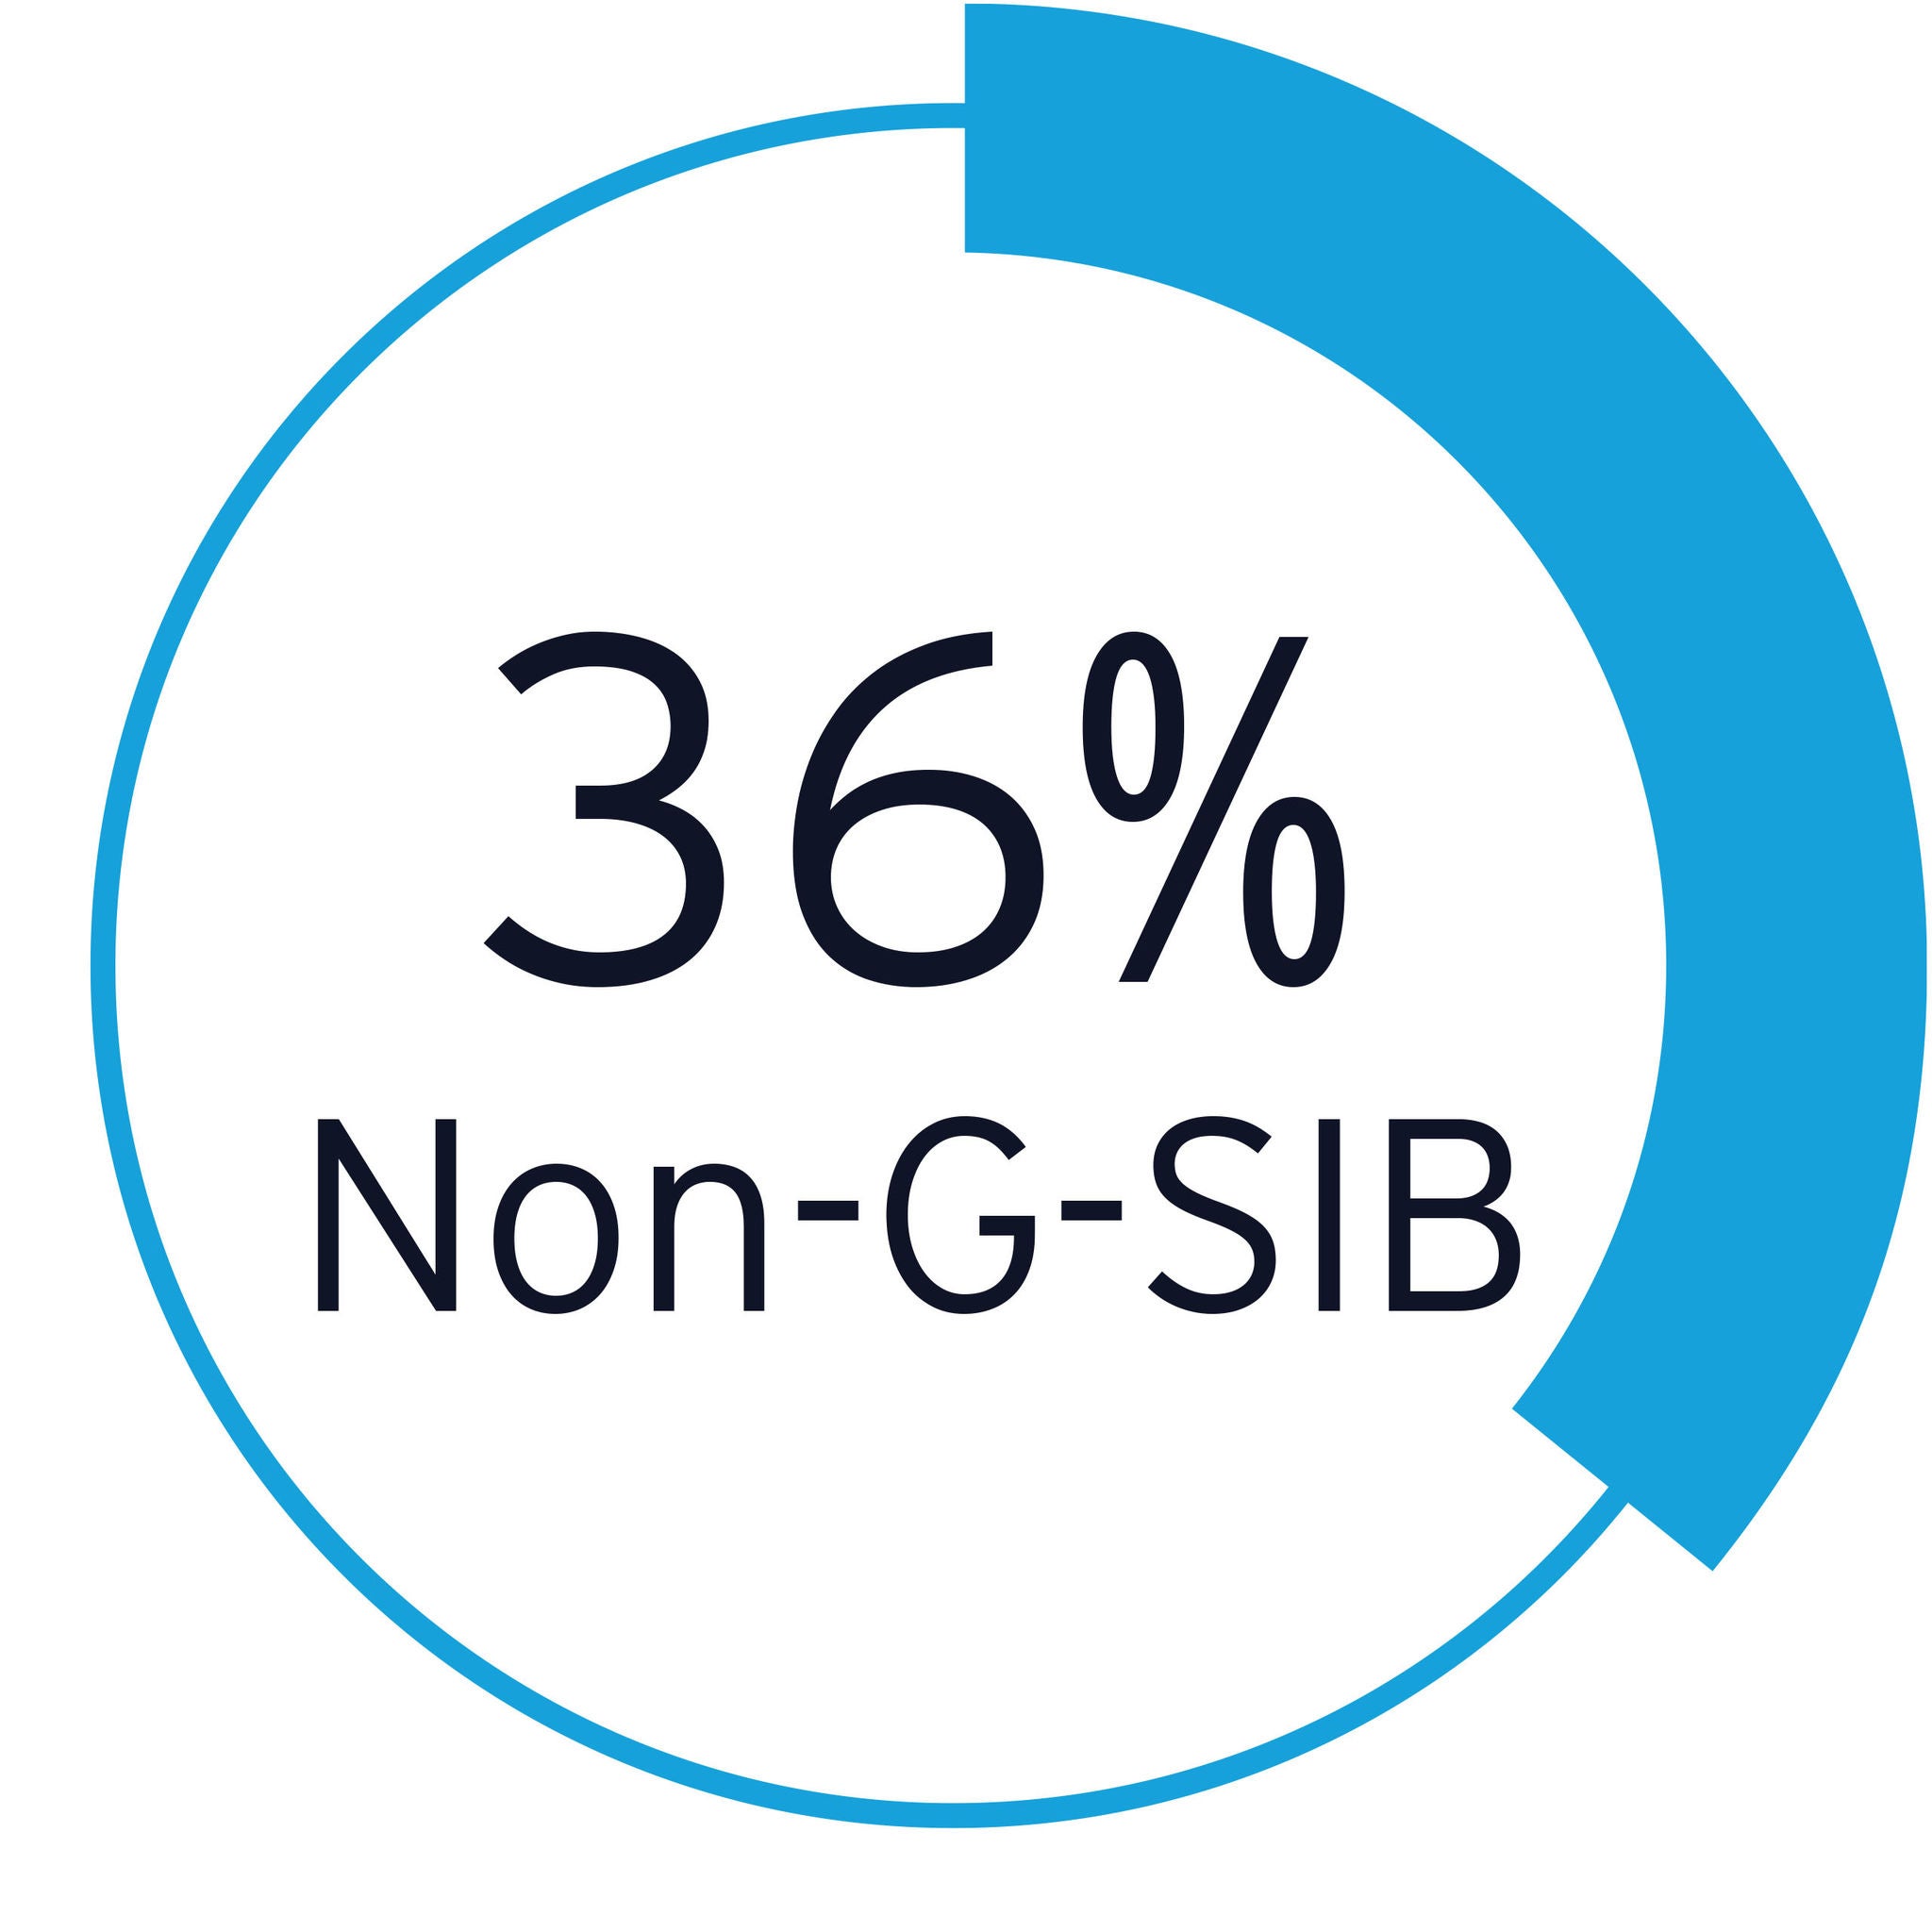 36% non-g-sib